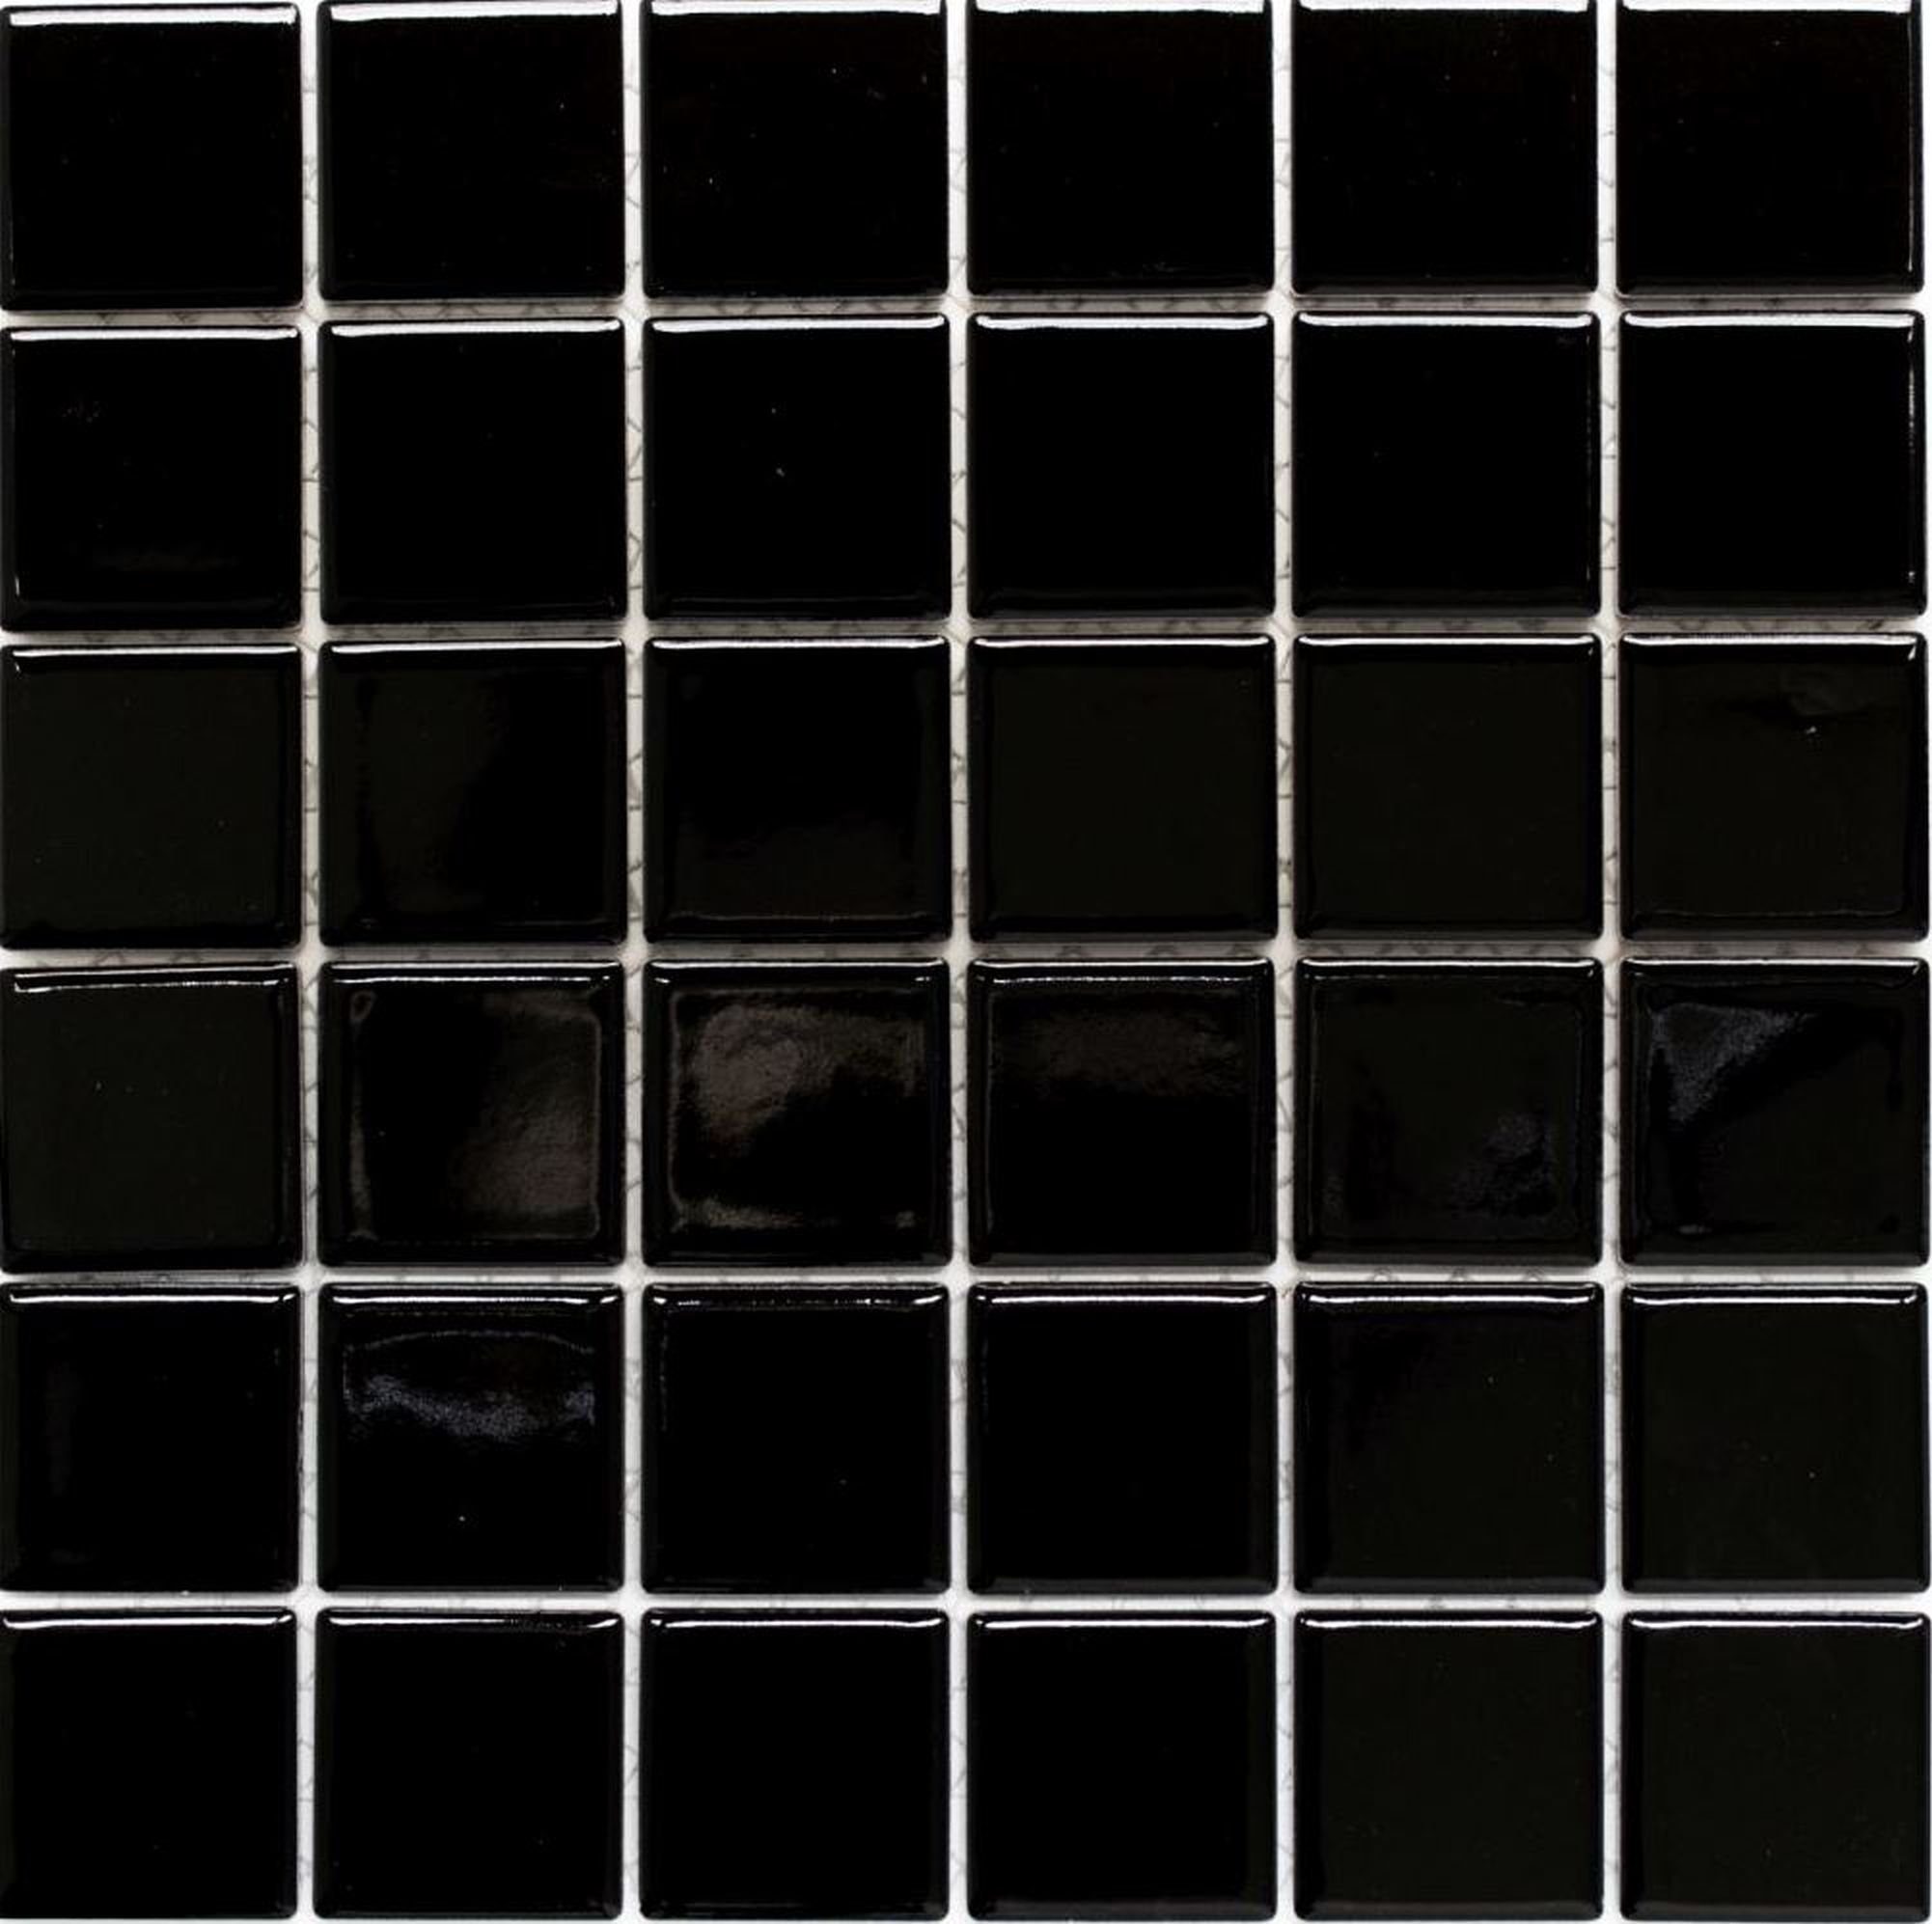 Mosani Mosaikfliesen Quadratisches Keramikmosaik Mosaikfliesen Matten glänzend schwarz / 10